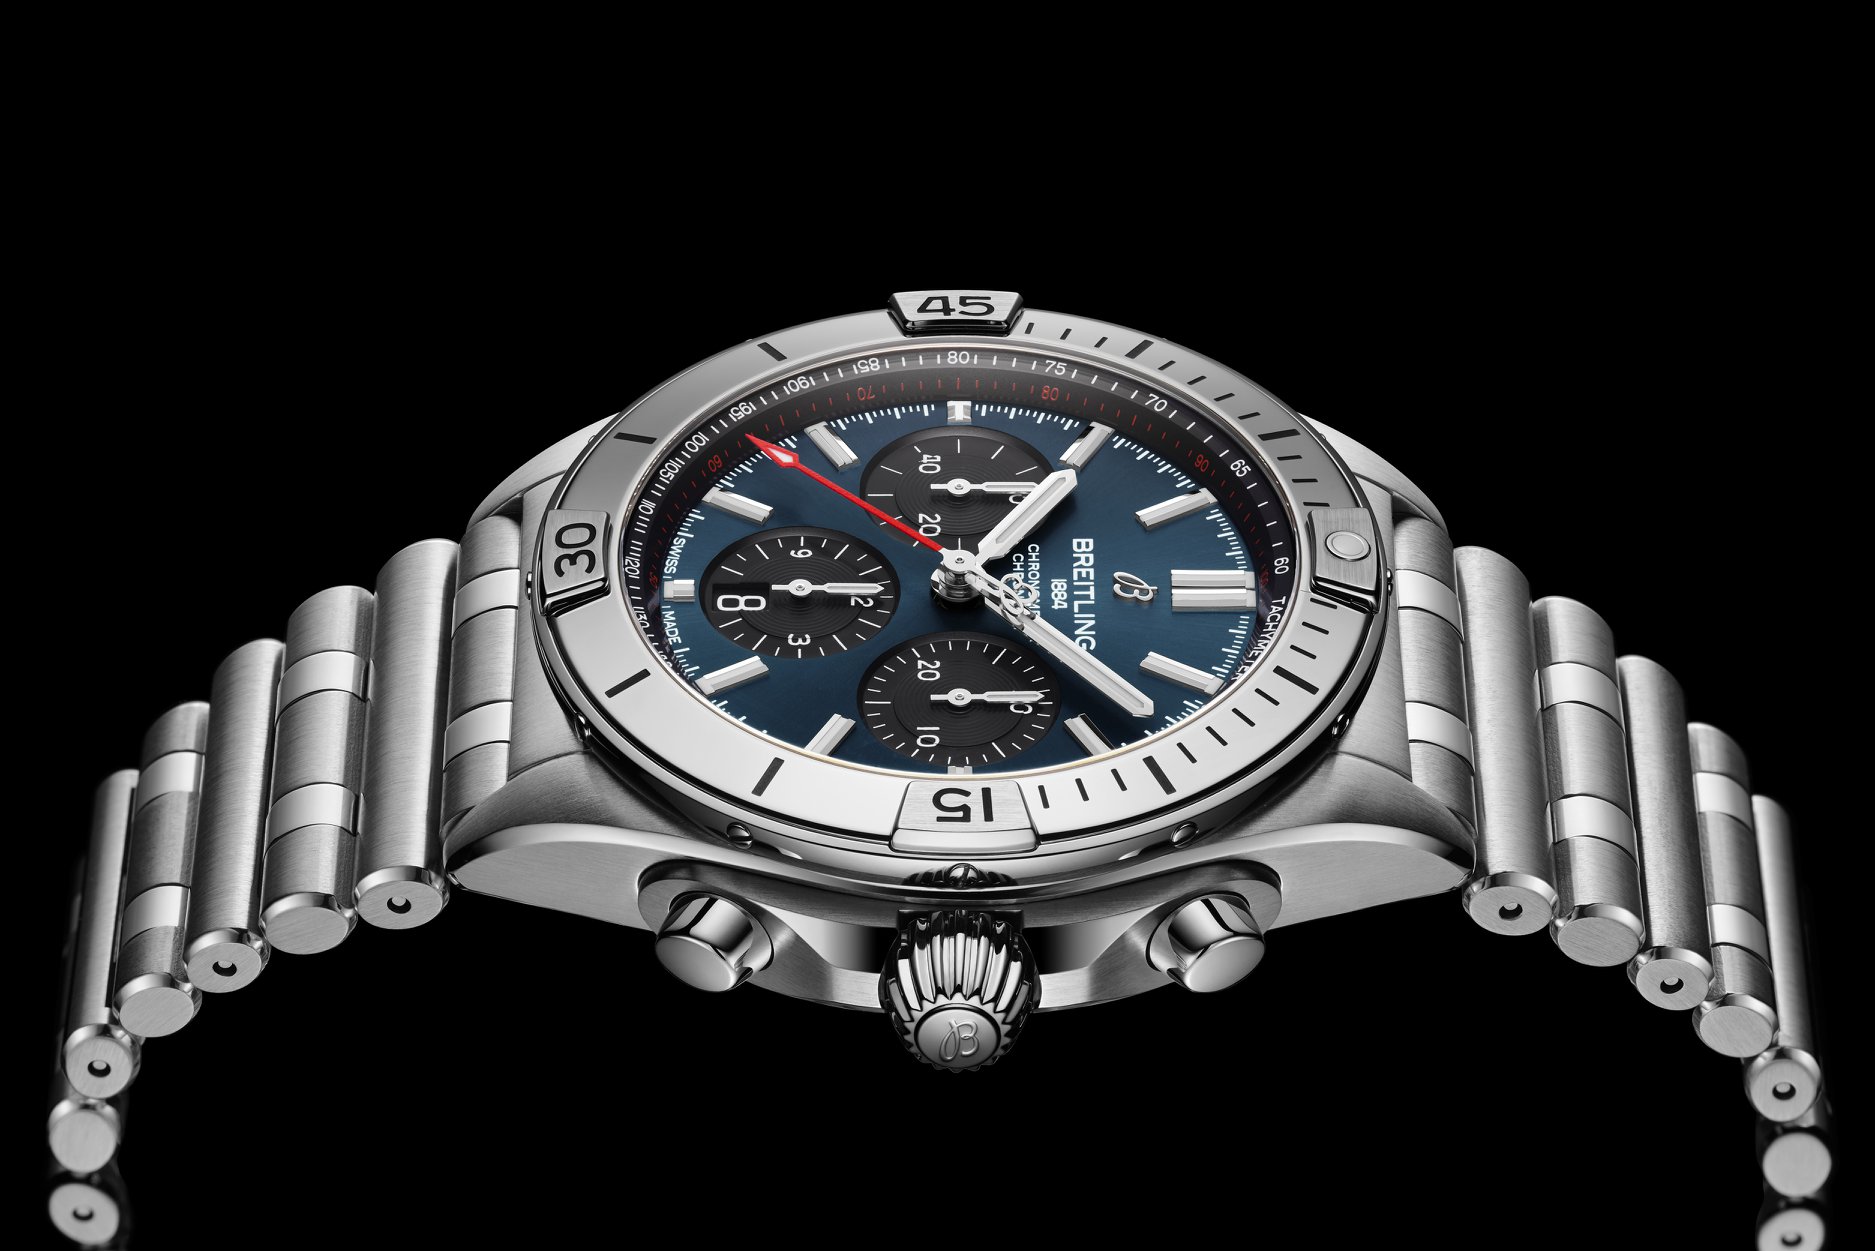 #TheAllNew 【Breitling百年靈 全新CHRONOMAT 機械計時系列】: 滿足您各種訴求的全能型運動腕錶  全新百年靈 Chronomat 機械計時腕錶是一款真正 的全能型運動腕錶，無論走紅毯或前往海灘，皆 從容自如。腕錶的特色讓人聯想起1980年代的經 典同名錶款，這使其極具辨識度。腕錶引人注目的 蝴蝶扣 Rouleaux 錶鏈及飾有錶圈指示器的經典旋 轉錶圈，無不完美展現百年靈的現代復古風格。 除了頌揚百年靈歷史上一大重要時刻，新款 Chronomat機械計時腕錶亦放眼未來，展現品牌 清晰願景。  Breitling Chronomat機械計時系列推出新一代腕 錶，彰顯了百年靈一項果決的決定:重返其卓越機 械計時製錶品牌的地位。每款Chronomat機械計 時腕錶無不具有超高識別度的特色: ... – 標誌性旋轉錶圈飾有錶圈指示器，不僅可保護水 晶鏡面，亦可簡化錶圈的操作。 